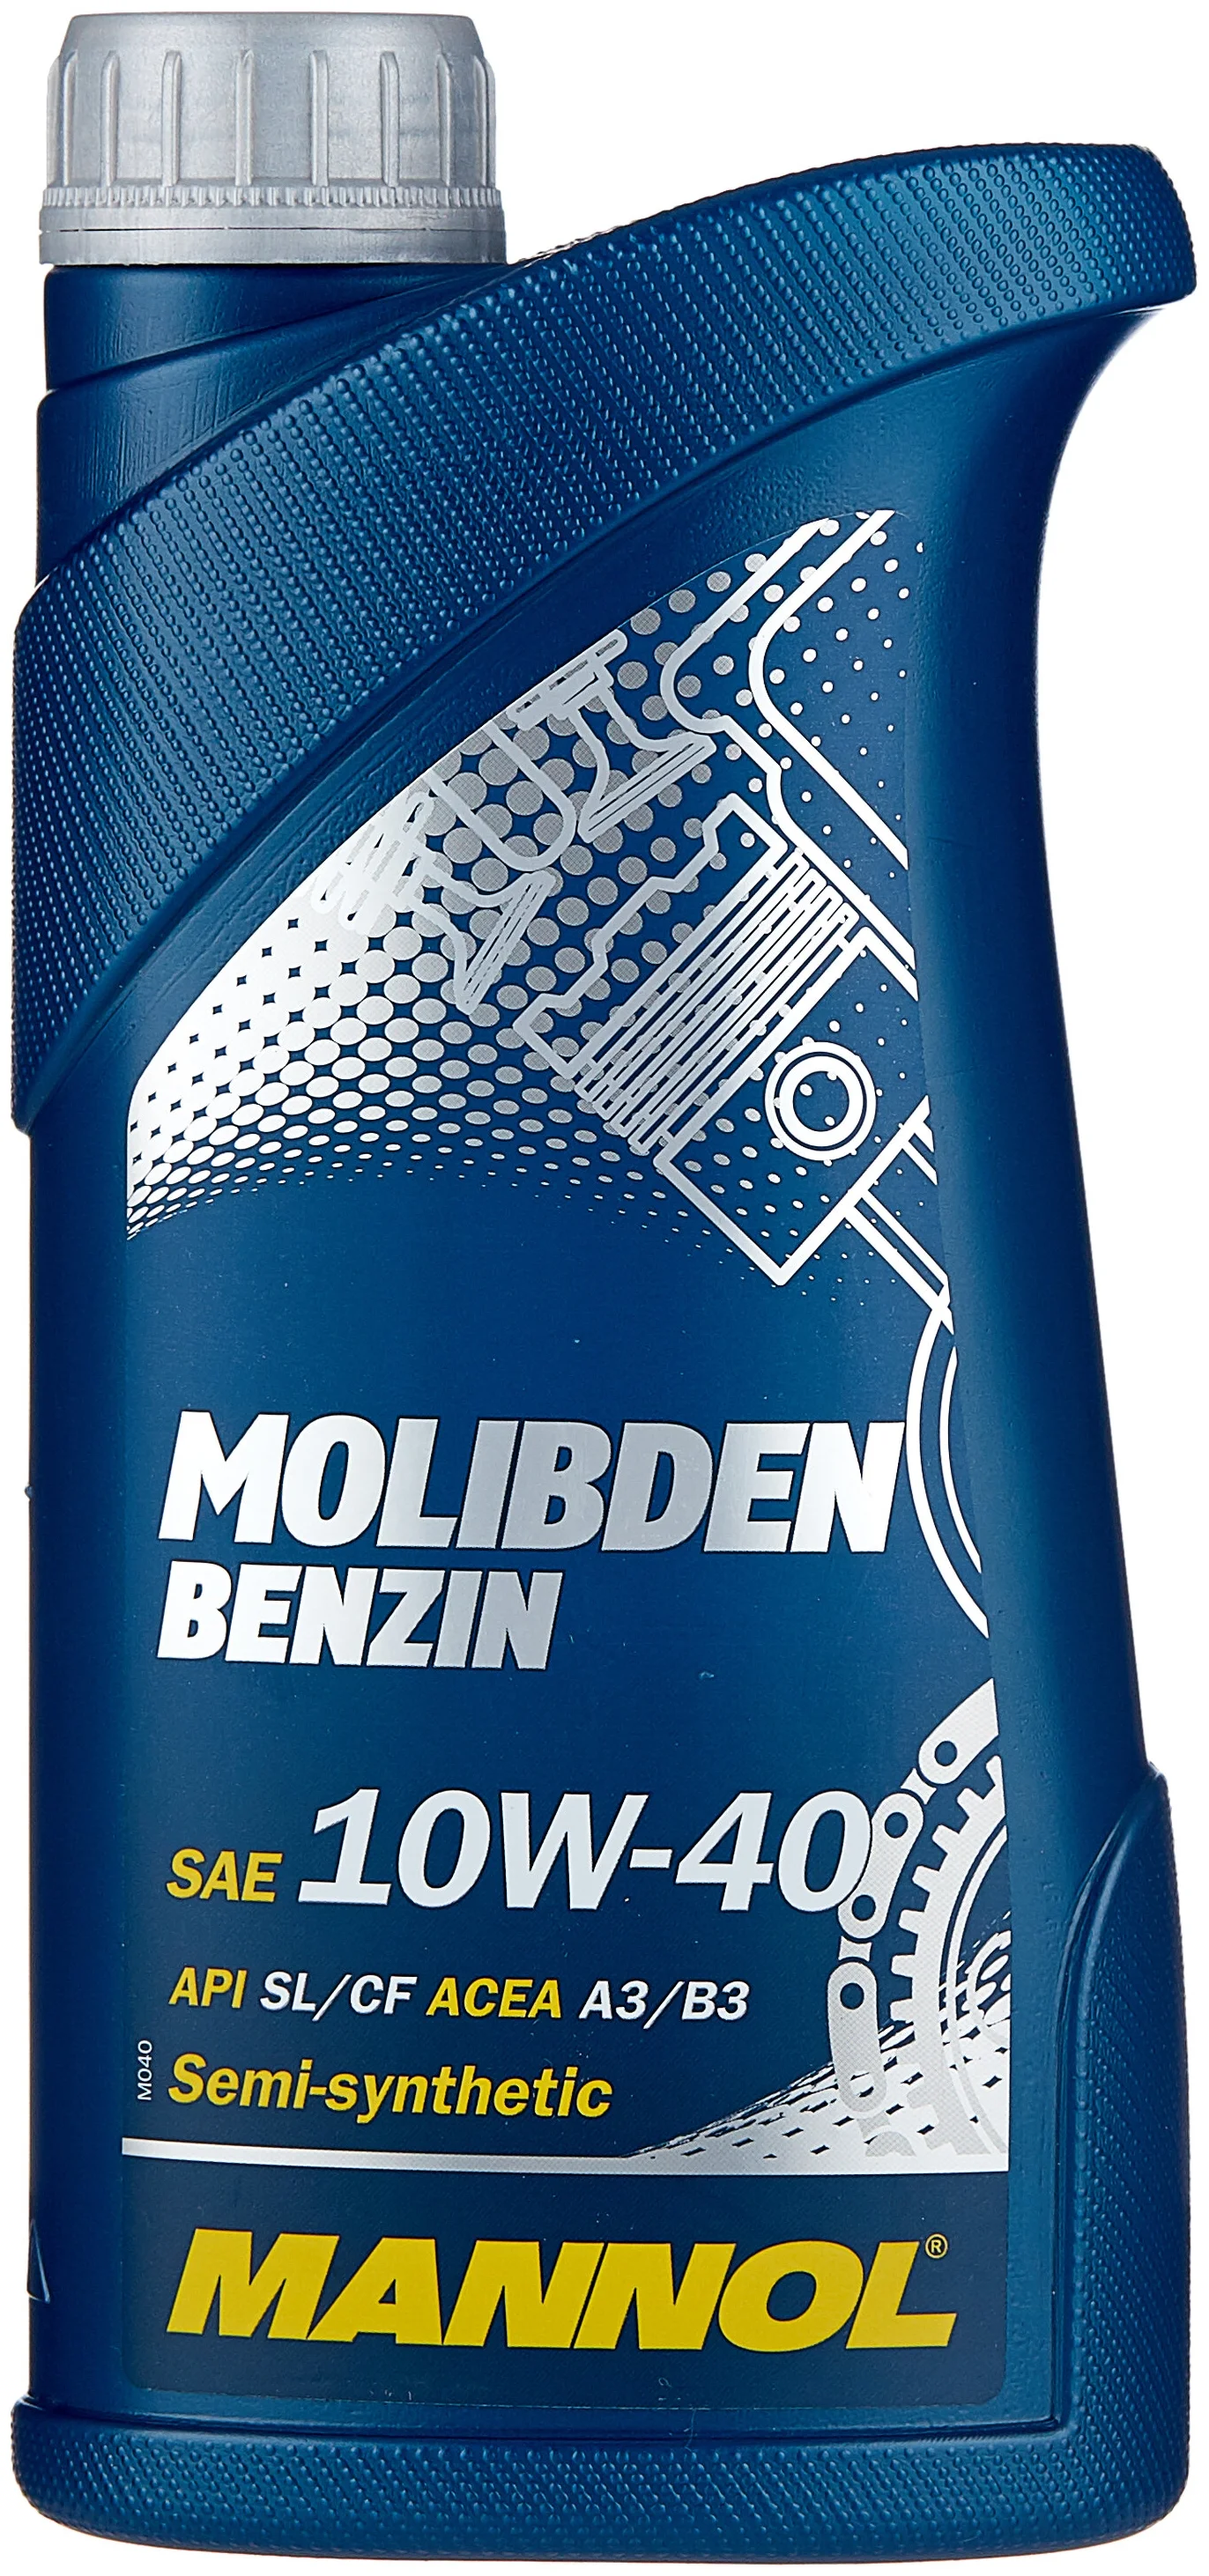 Mannol Molibden Benzin 10W-40 - для четырехтактных двигателей